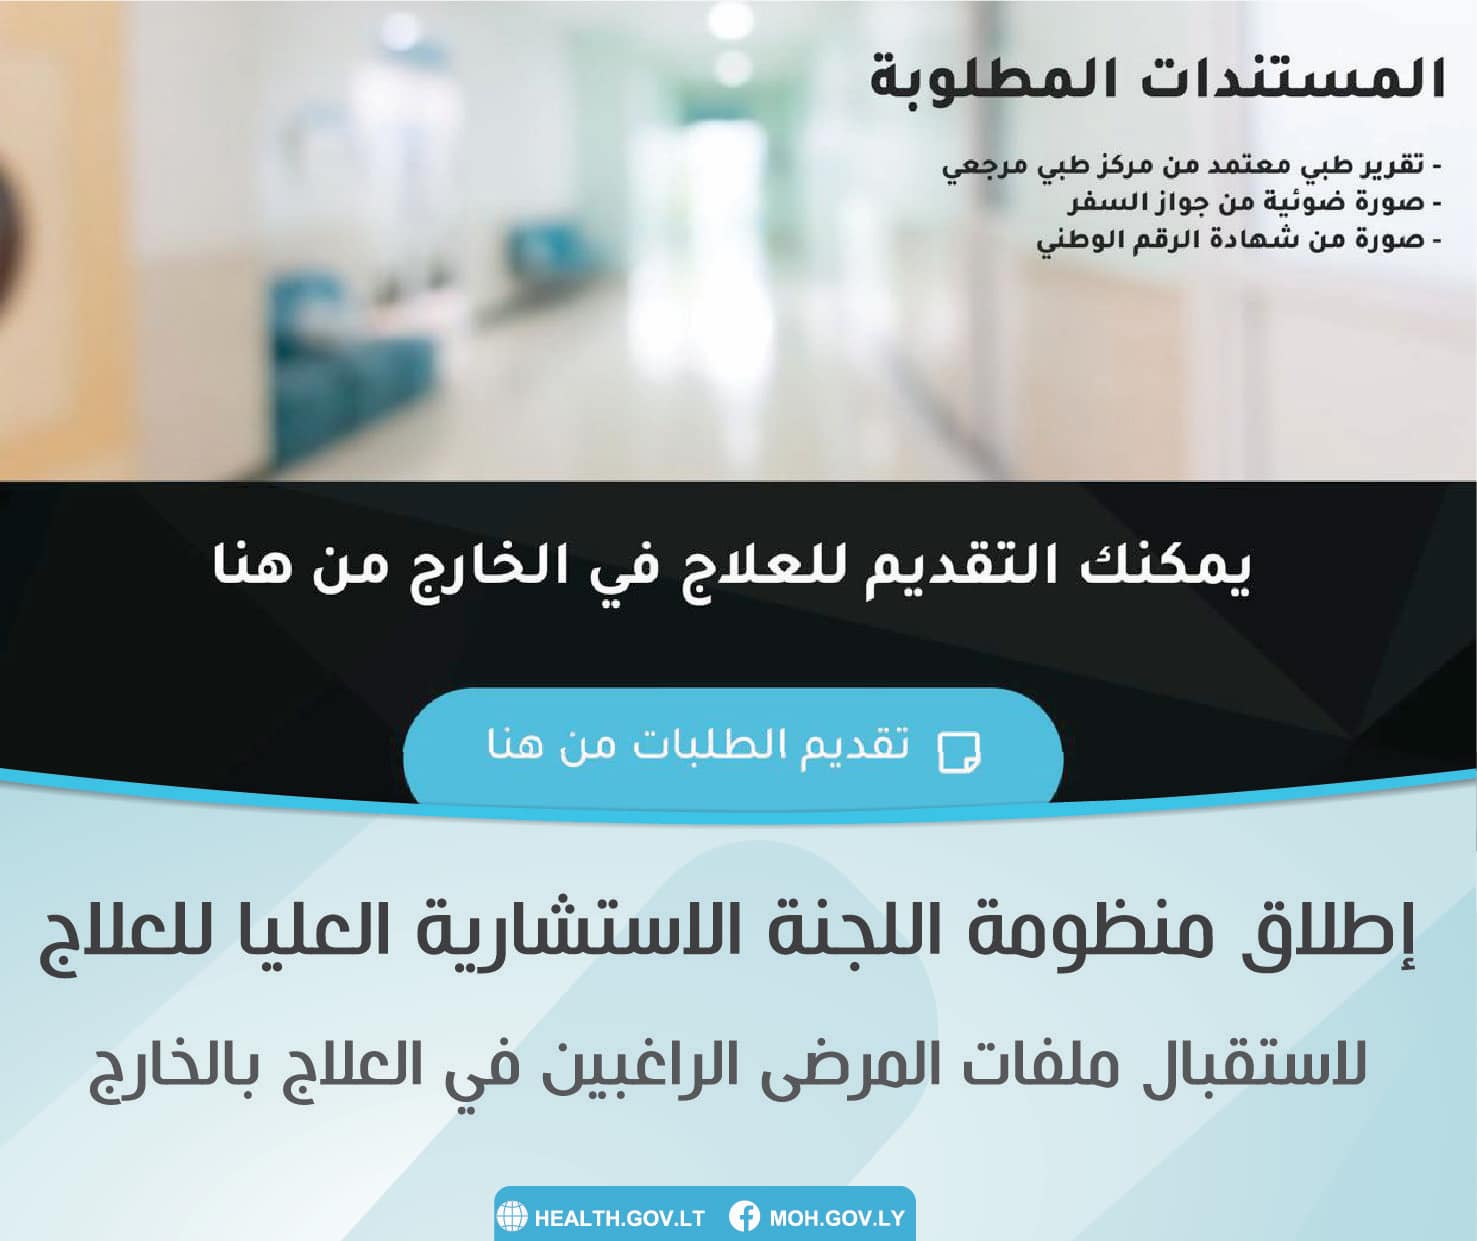 وزارة الصحة تعلن إطلاق أول منظومة إلكترونية لتلقي طلبات العلاج بالخارج على شبكة الإنترنت